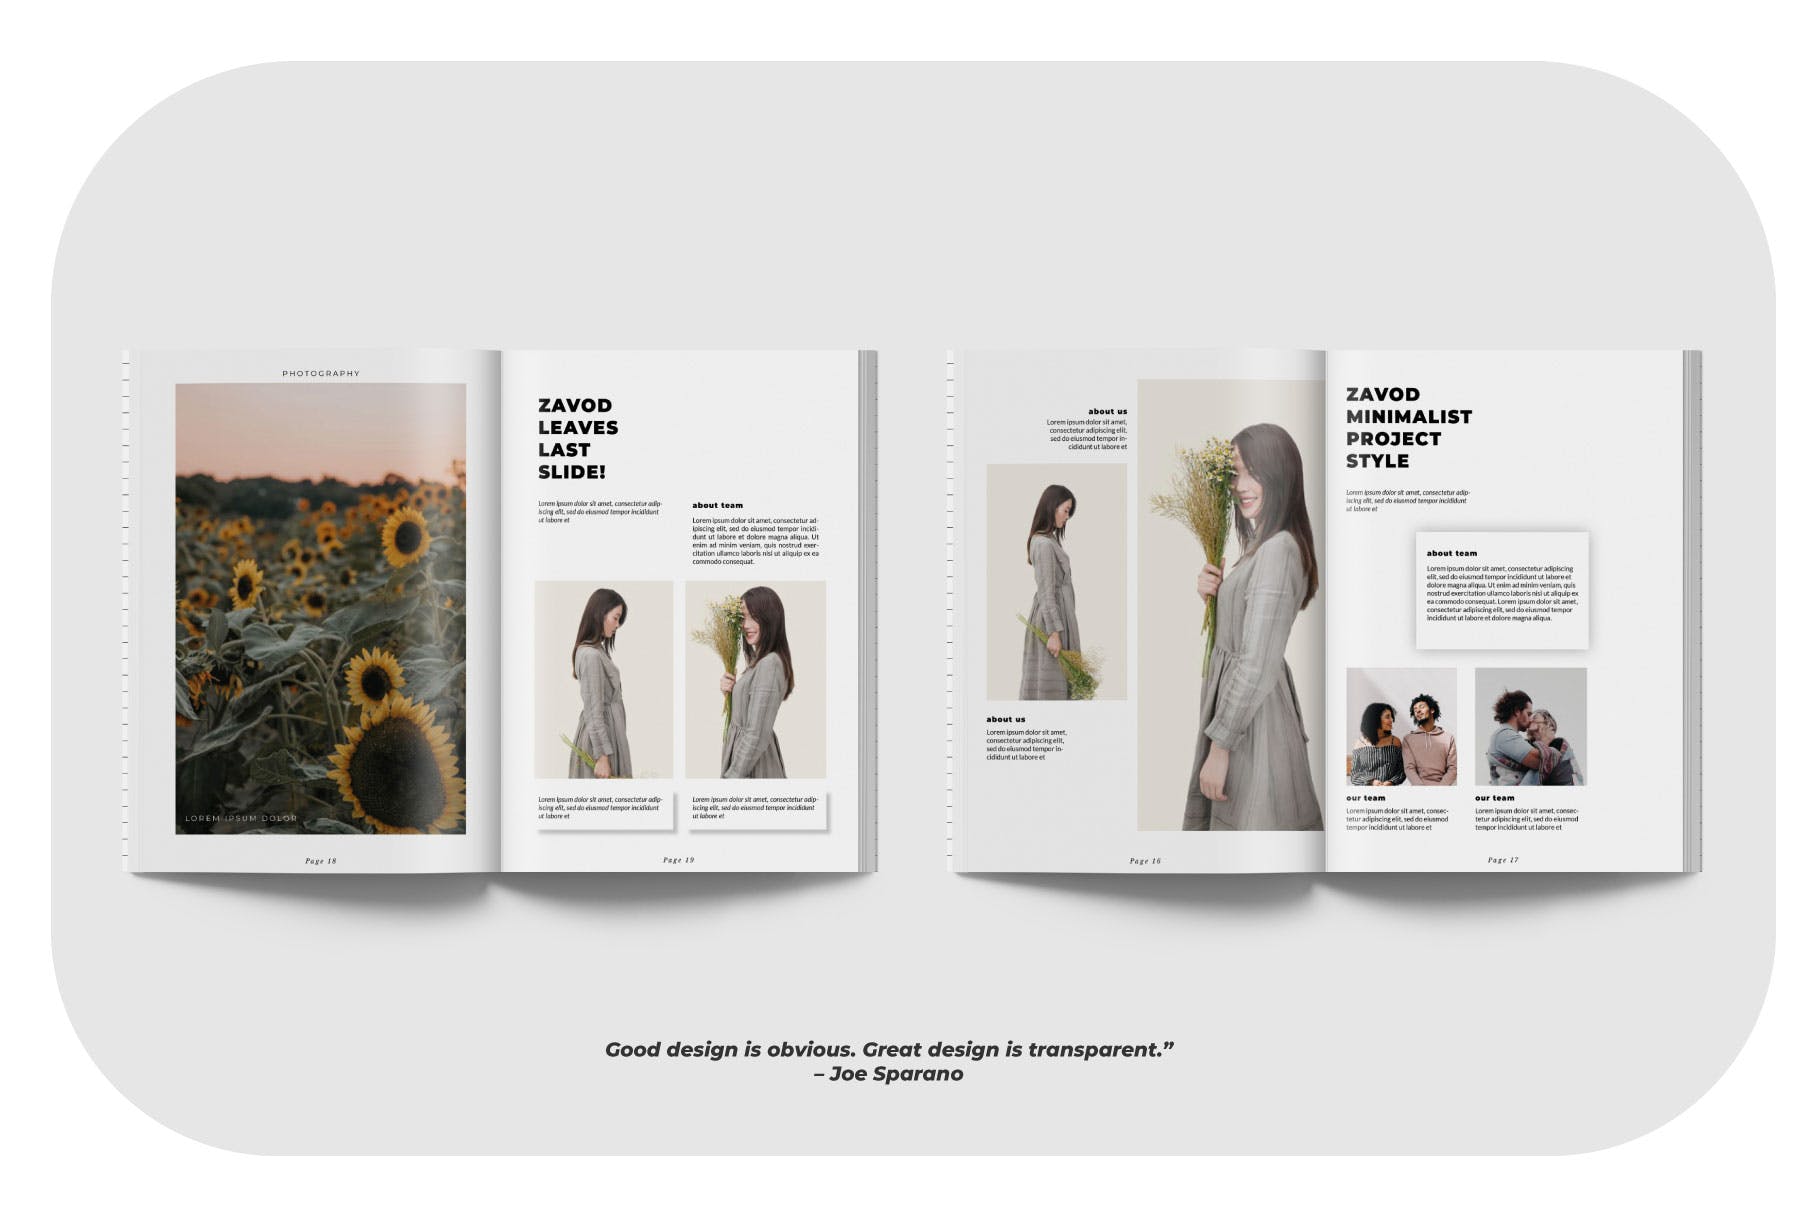 摄影/模特主题大洋岛精选杂志排版设计模板 ZAVOD Business Magazine Minimal Template – LS插图3